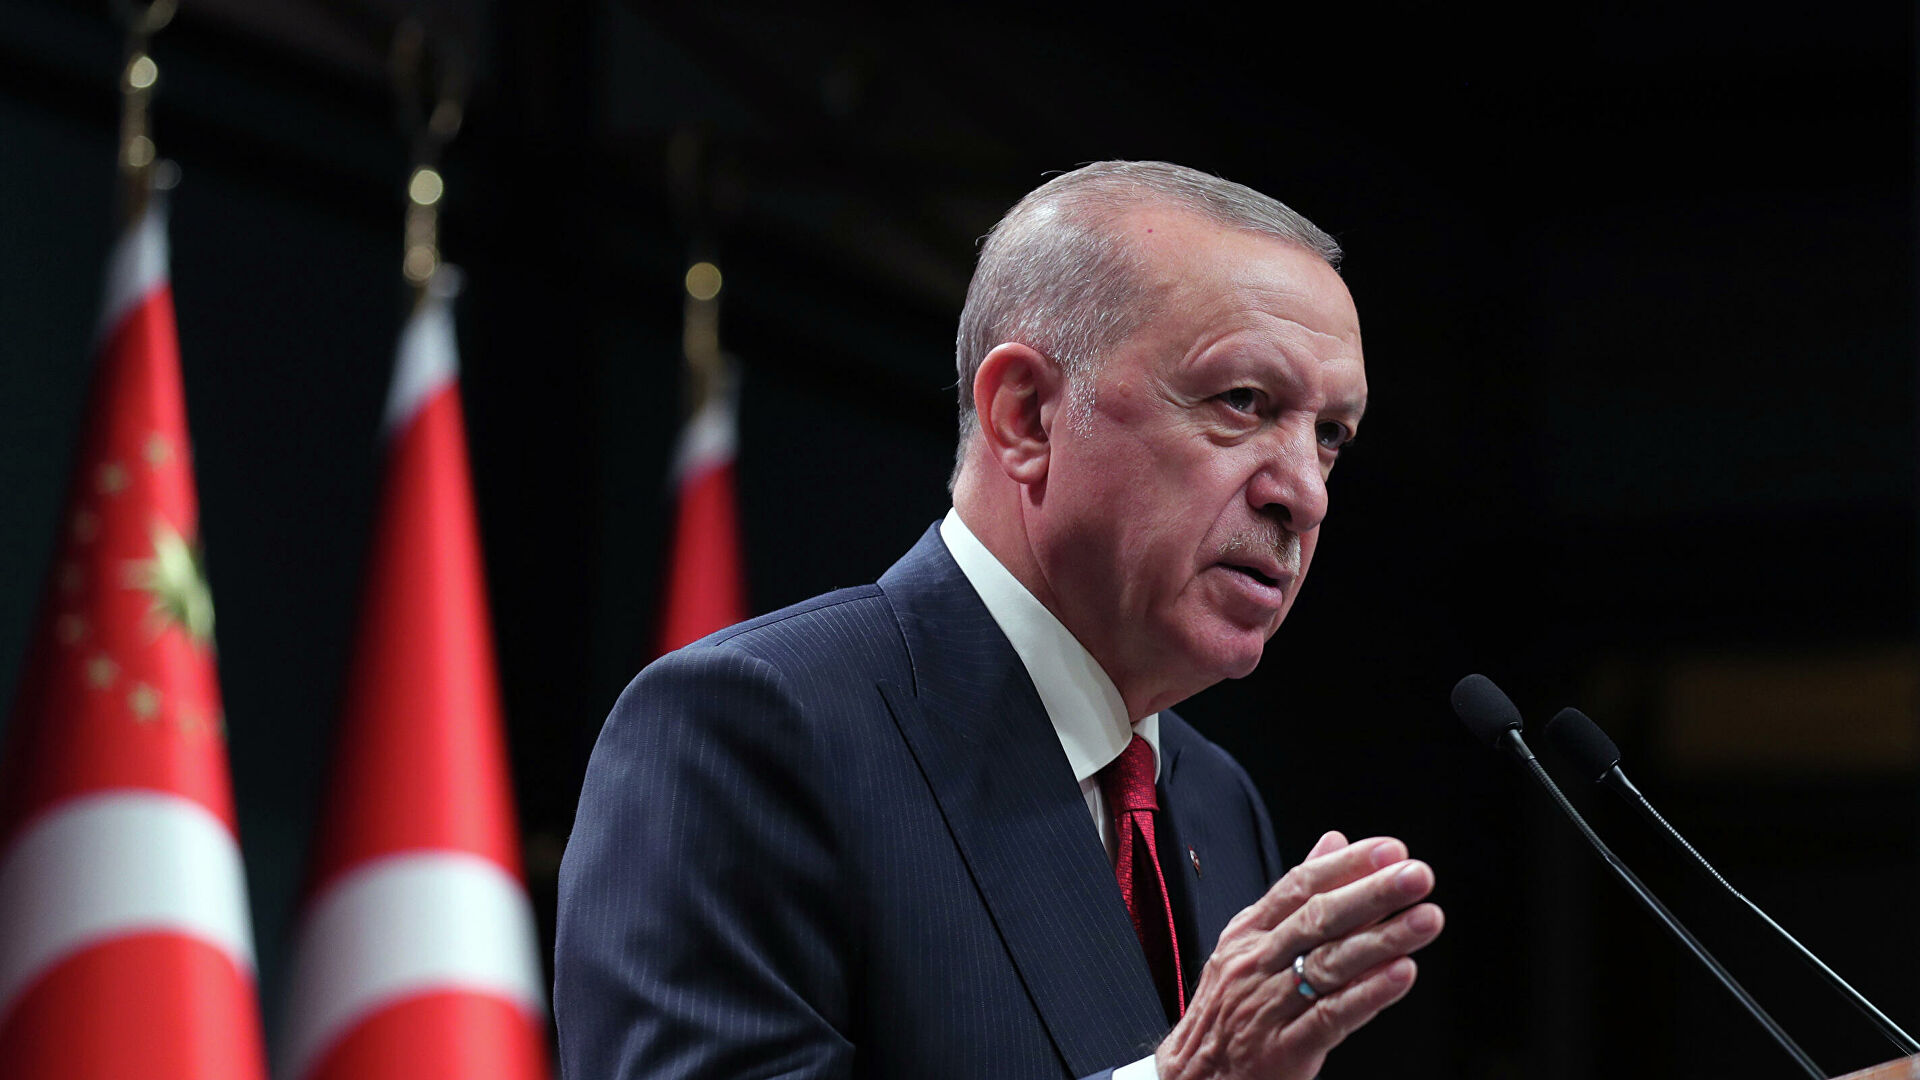 Merényletet akartak elkövetni Törökország elnöke ellen